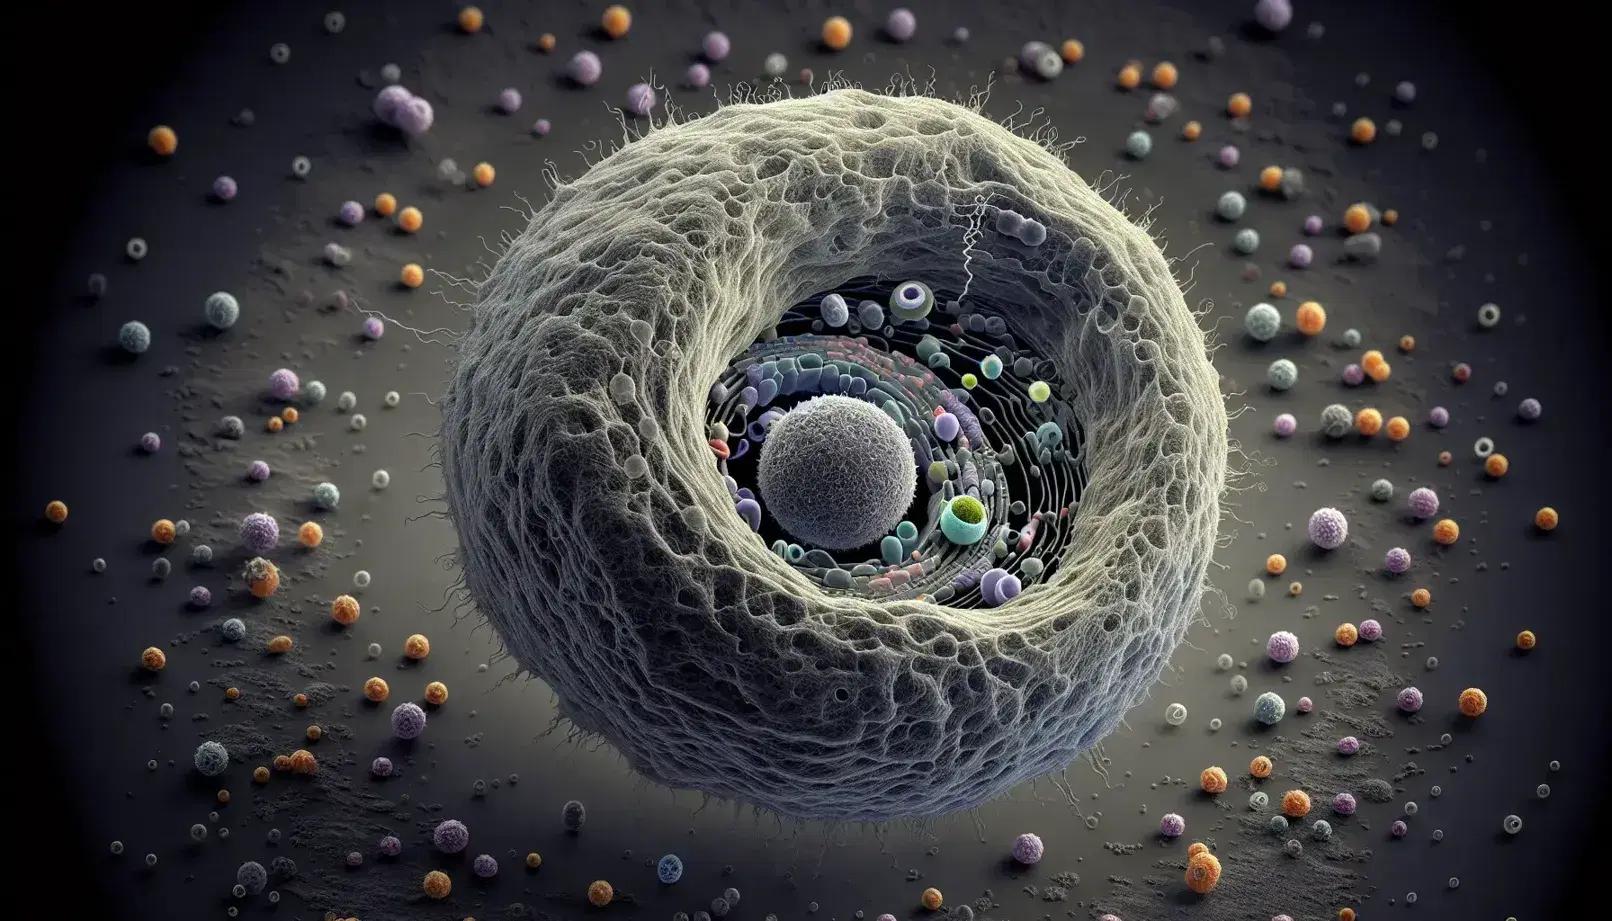 Vista microscópica de célula animal con membrana, núcleo y moléculas extracelulares en tonos grises y colores, mostrando canal de transporte.